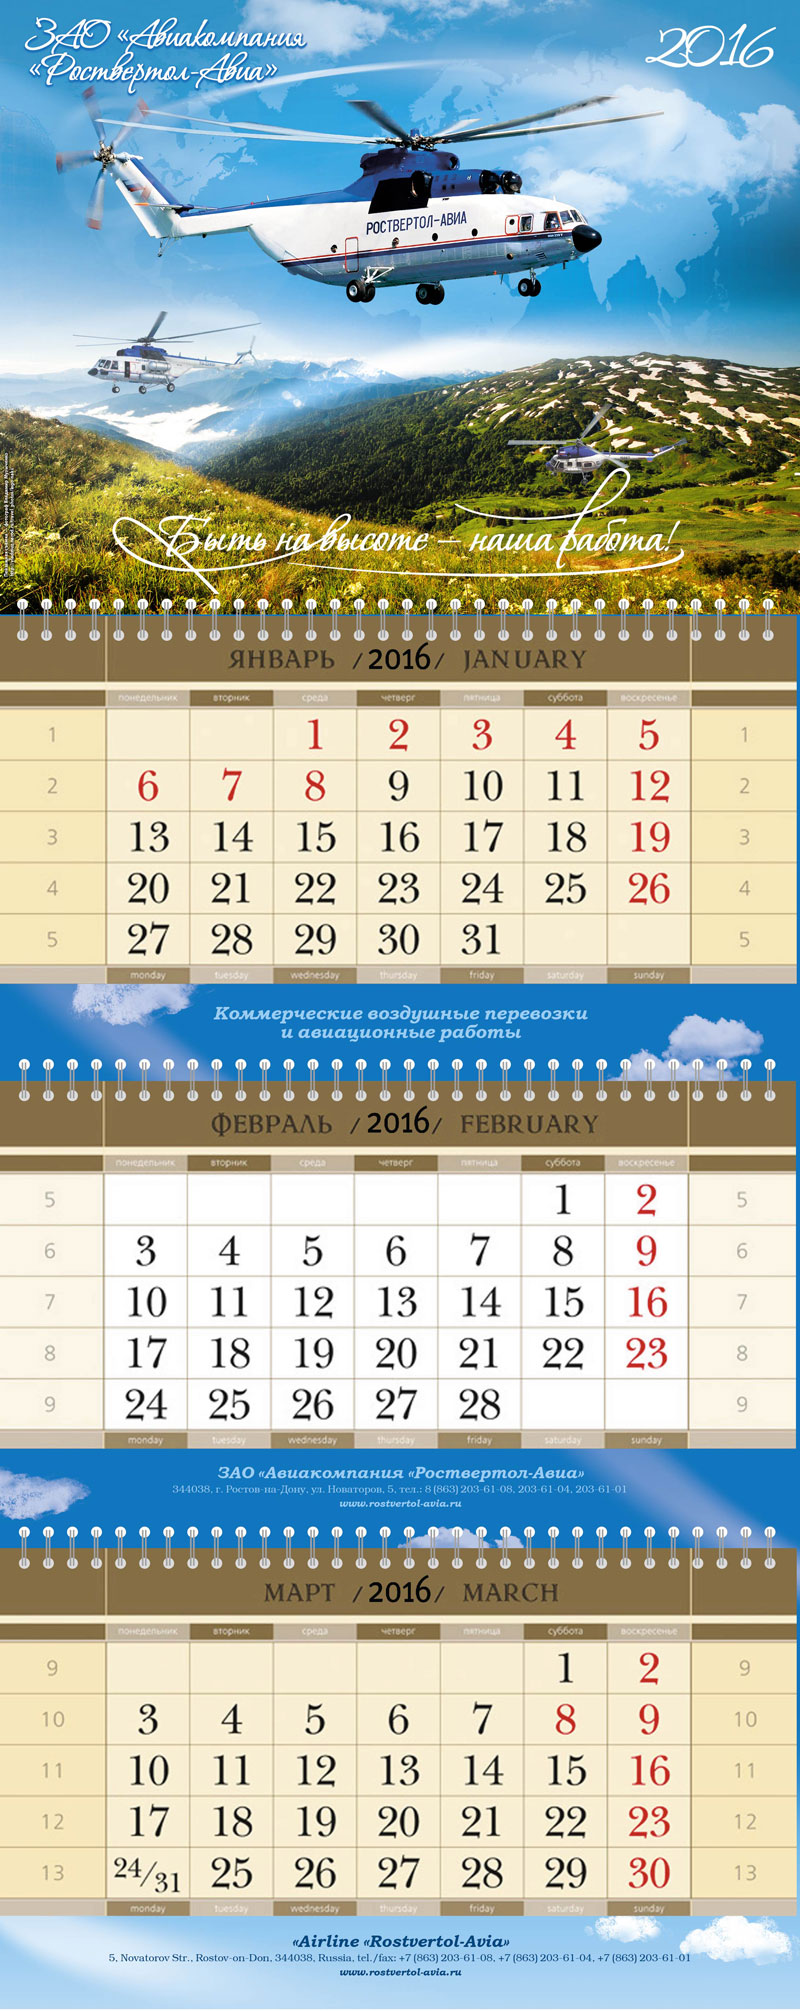 Фото в календаре ЗАО «Авиакомпании «Роствертол-Авиа»